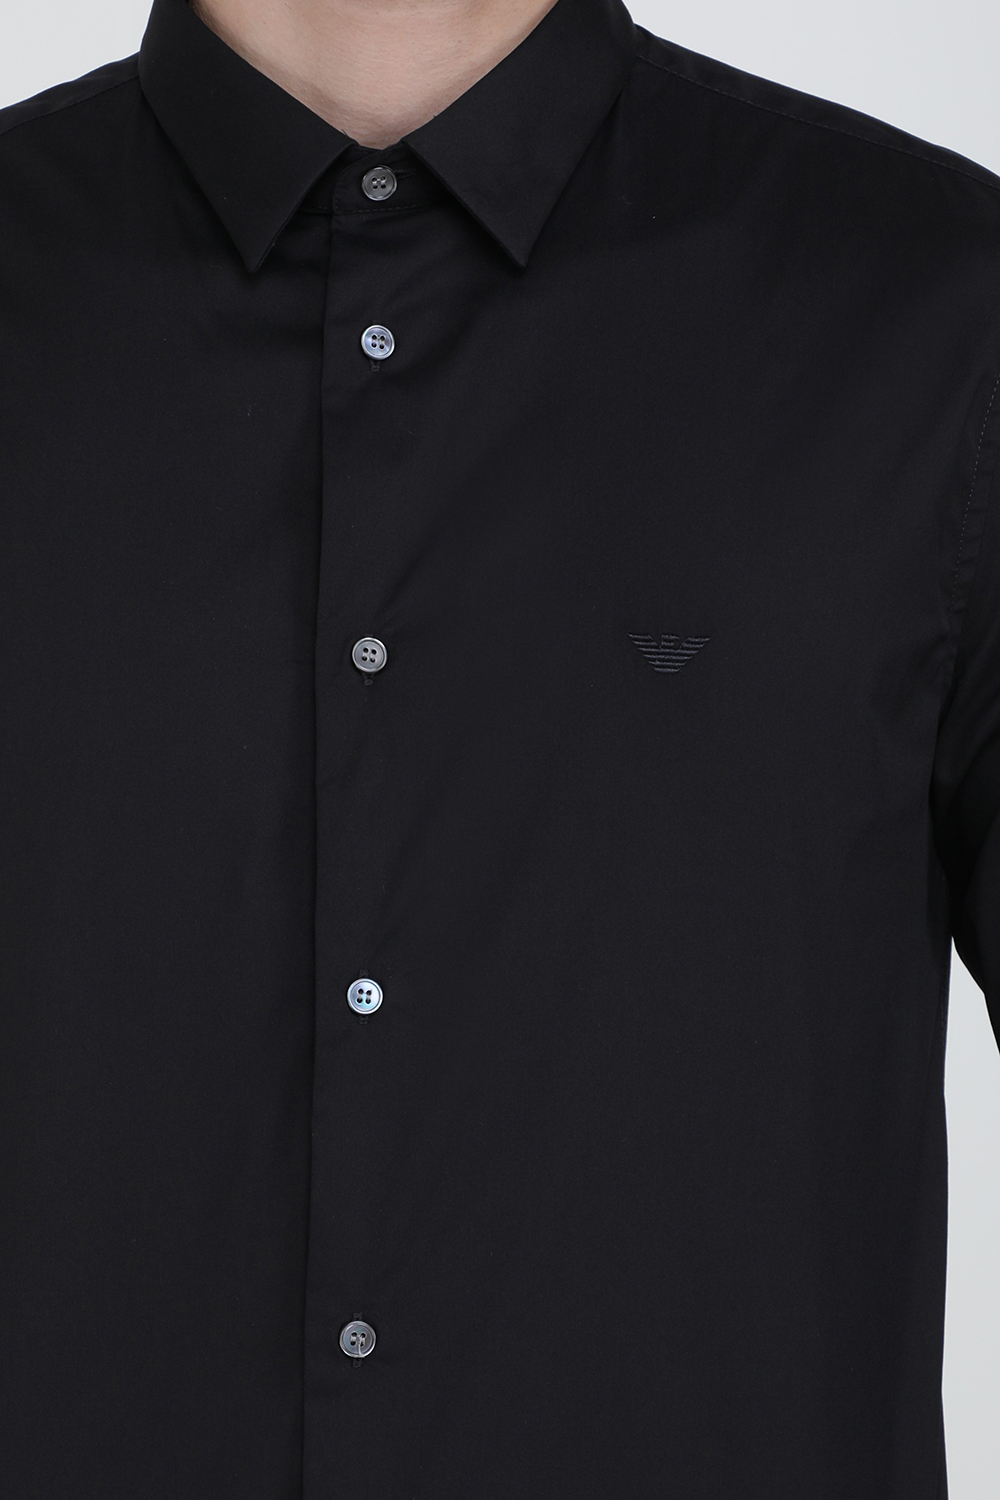 חולצת סלים עם כפתורים בגוון שחור EMPORIO ARMANI